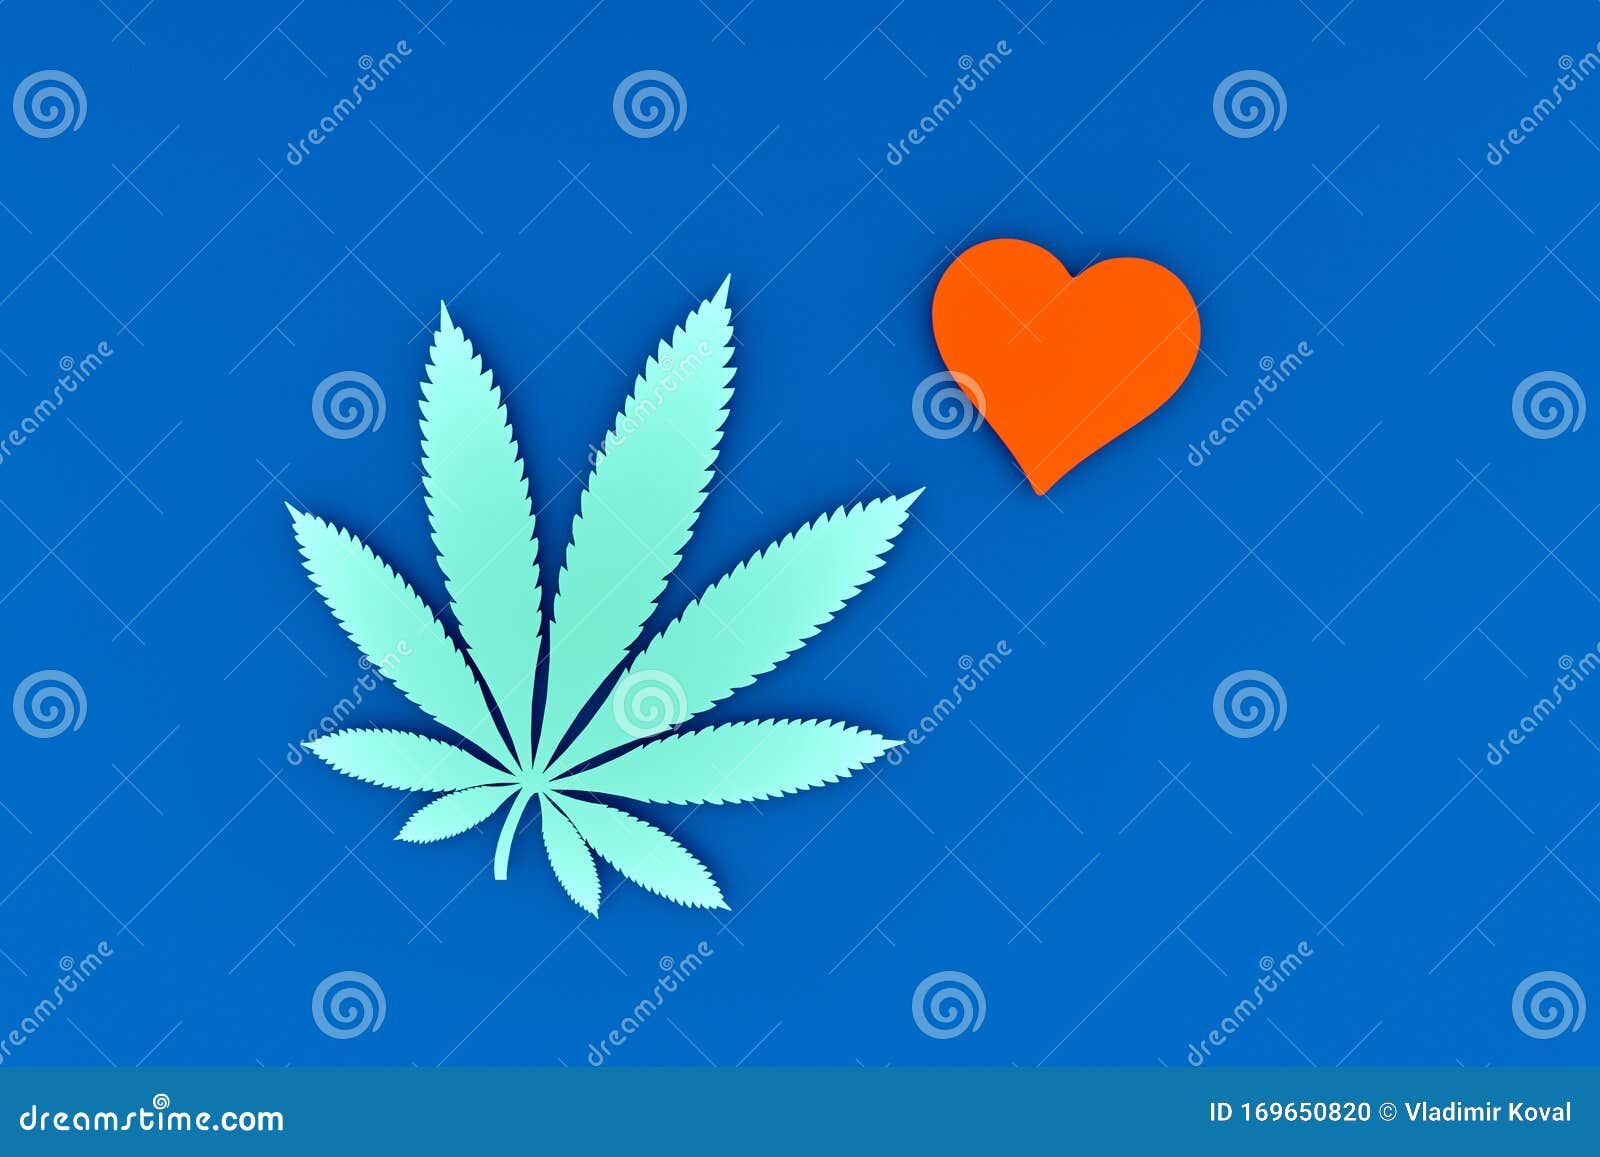 Сердце и конопля курс лечения марихуаной